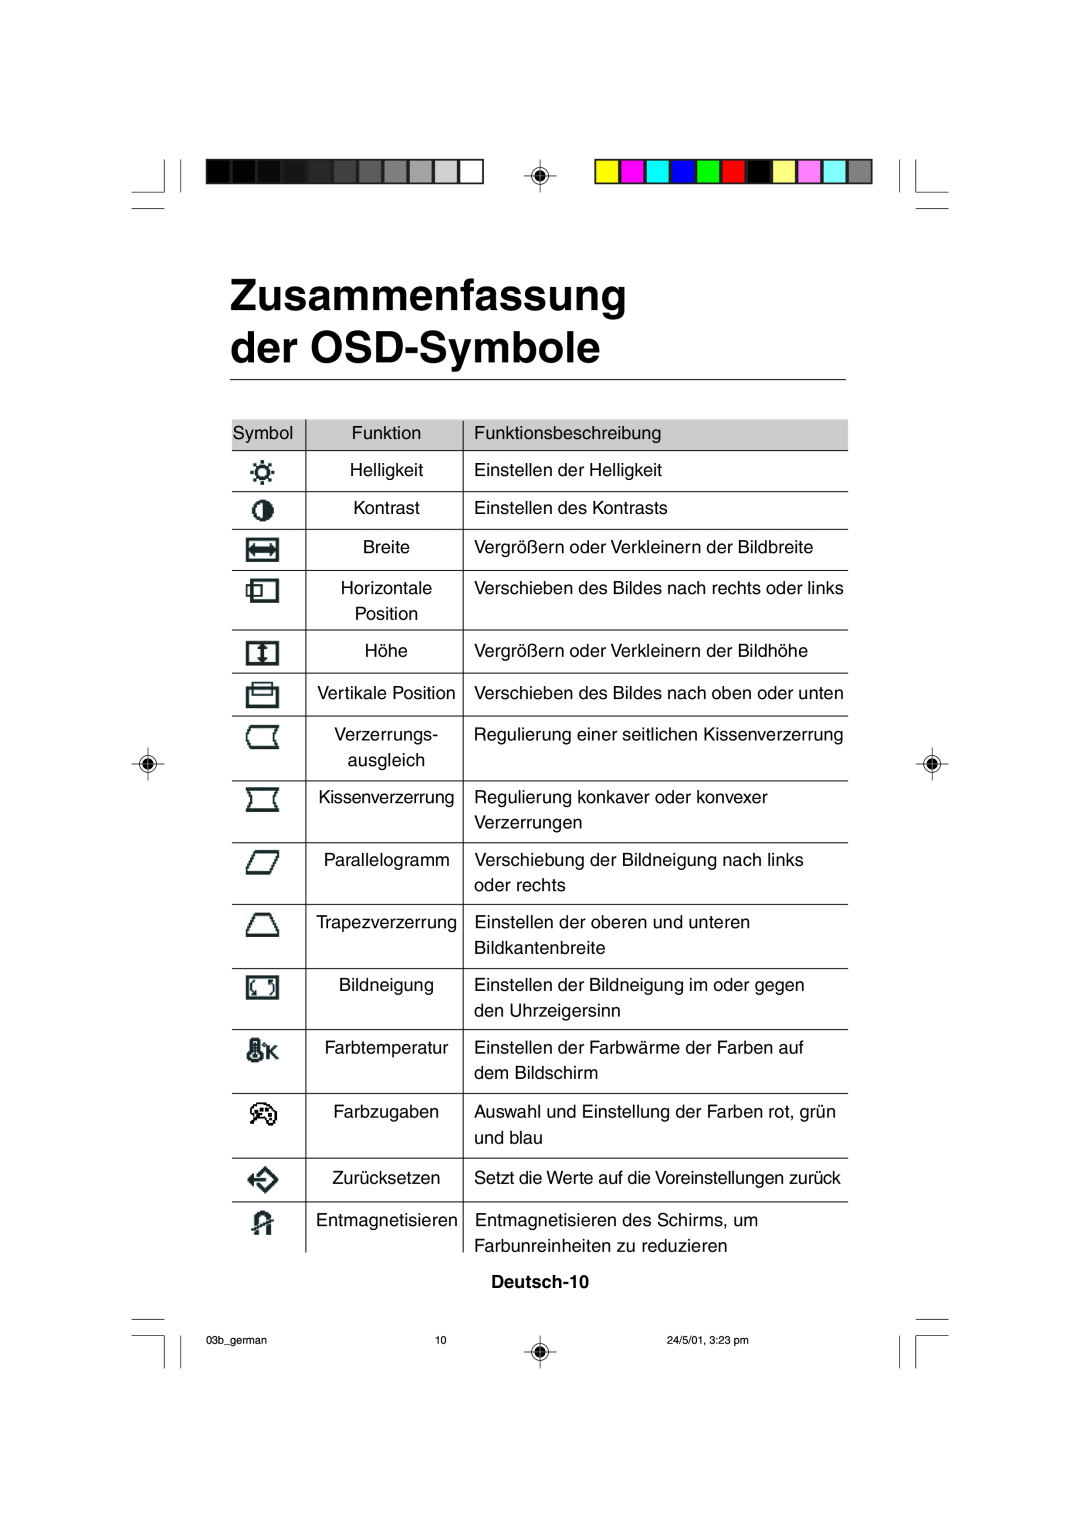 Mitsubishi Electronics M557 user manual Zusammenfassung der OSD-Symbole, Deutsch-10 